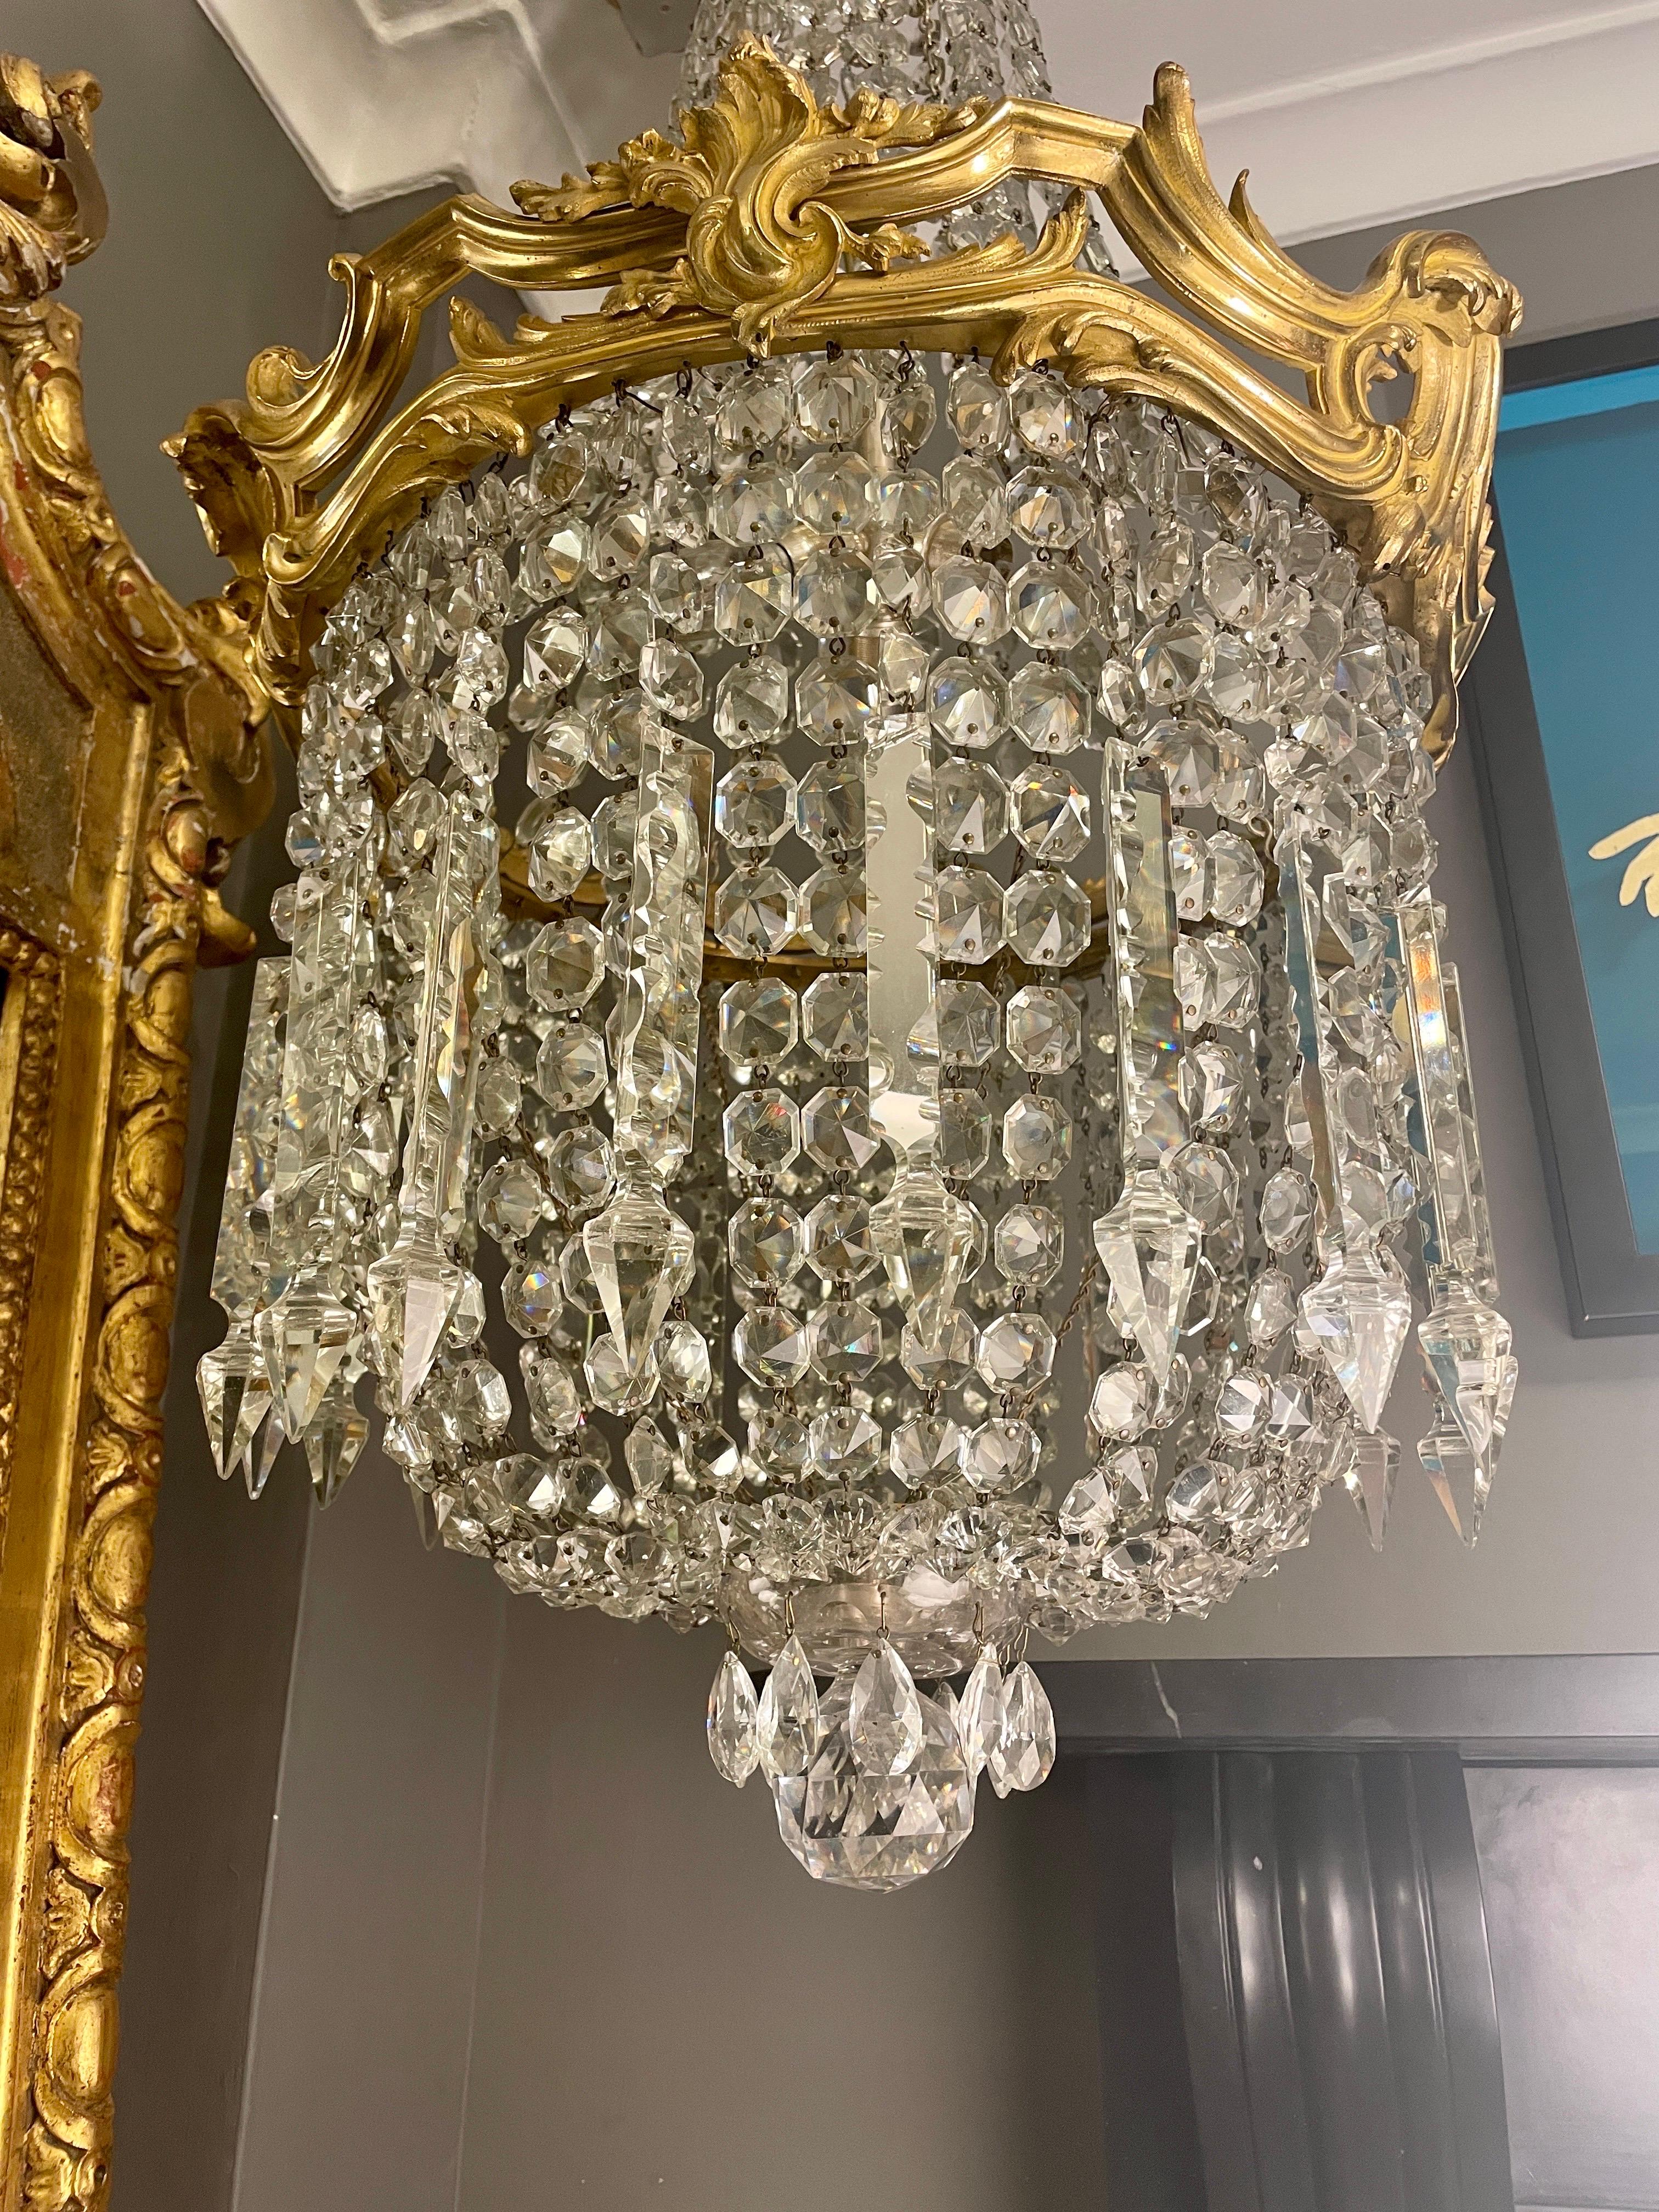 Un grand lustre français en bronze doré et cristal de style tente et bourse. Réalisé dans le style rococo Louis XV, le cadre en bronze doré est orné de larges rinceaux d'acanthes feuillagées et de cartouches de plumes. La tente supérieure est en